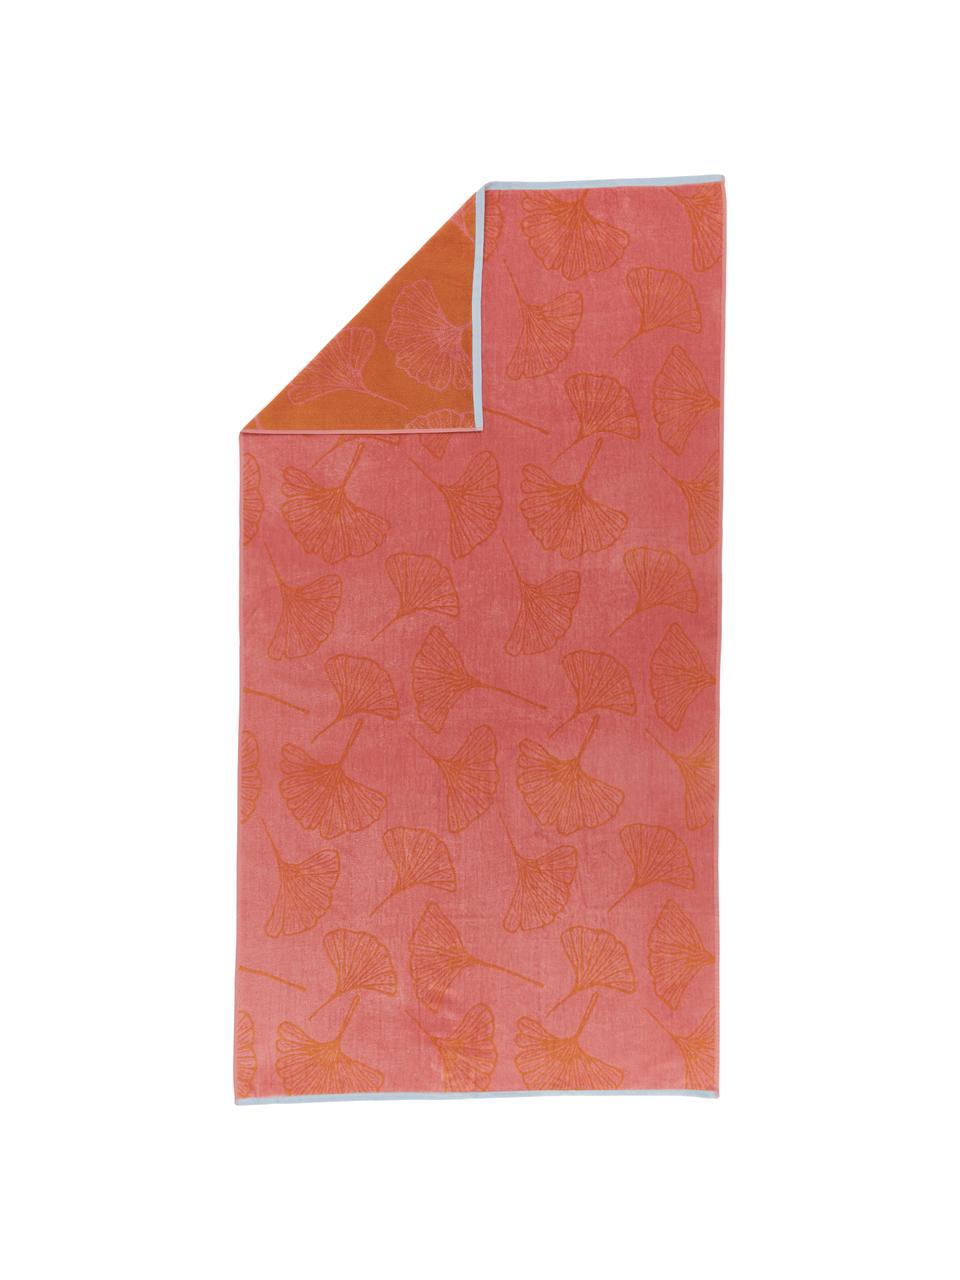 Serviette de plage pur coton rose orange Burnt Sky, 100 % coton, Rose, orange, larg. 100 x long. 180 cm